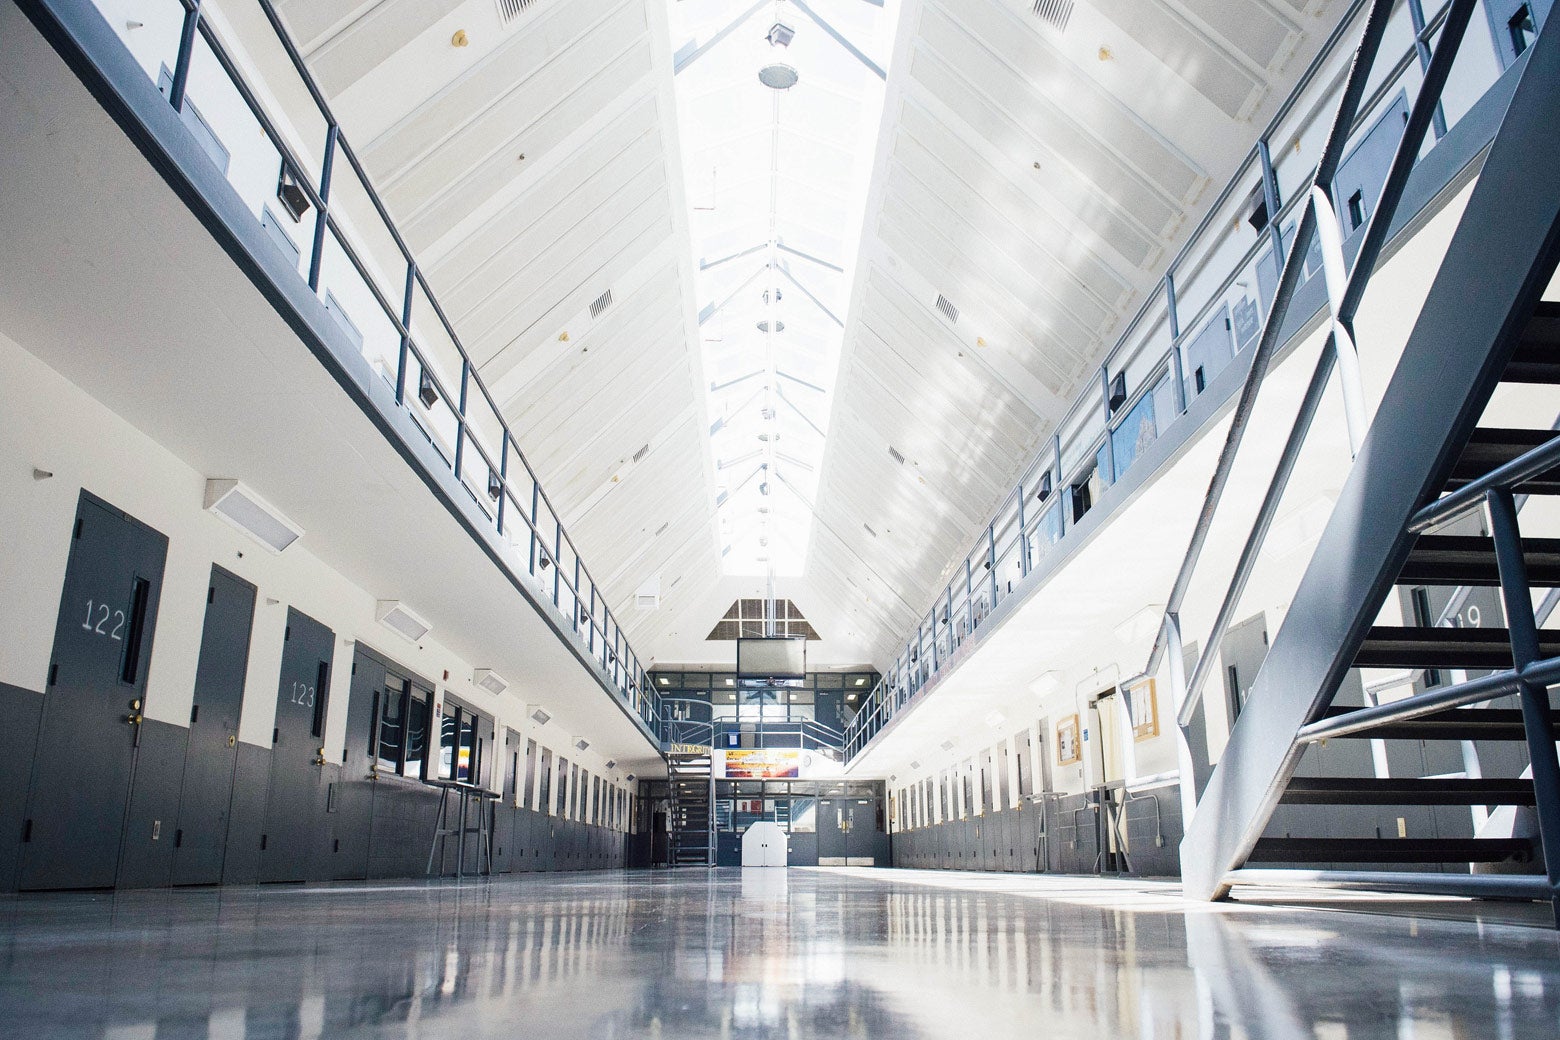 A cell block at the El Reno Federal Correctional Institution in El Reno, Oklahoma.